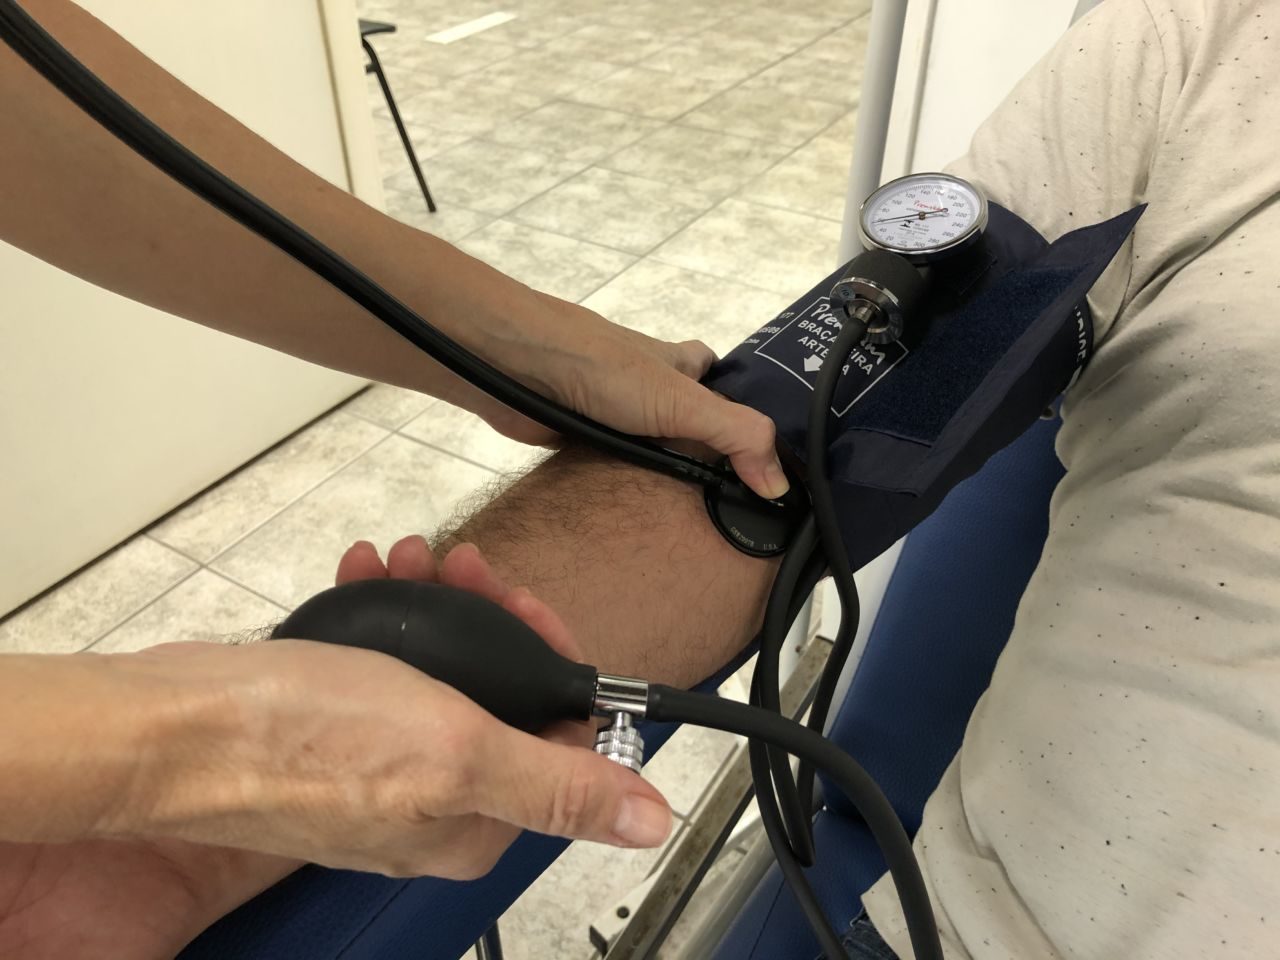 Aferição de pressão com detalhe de braço masculino